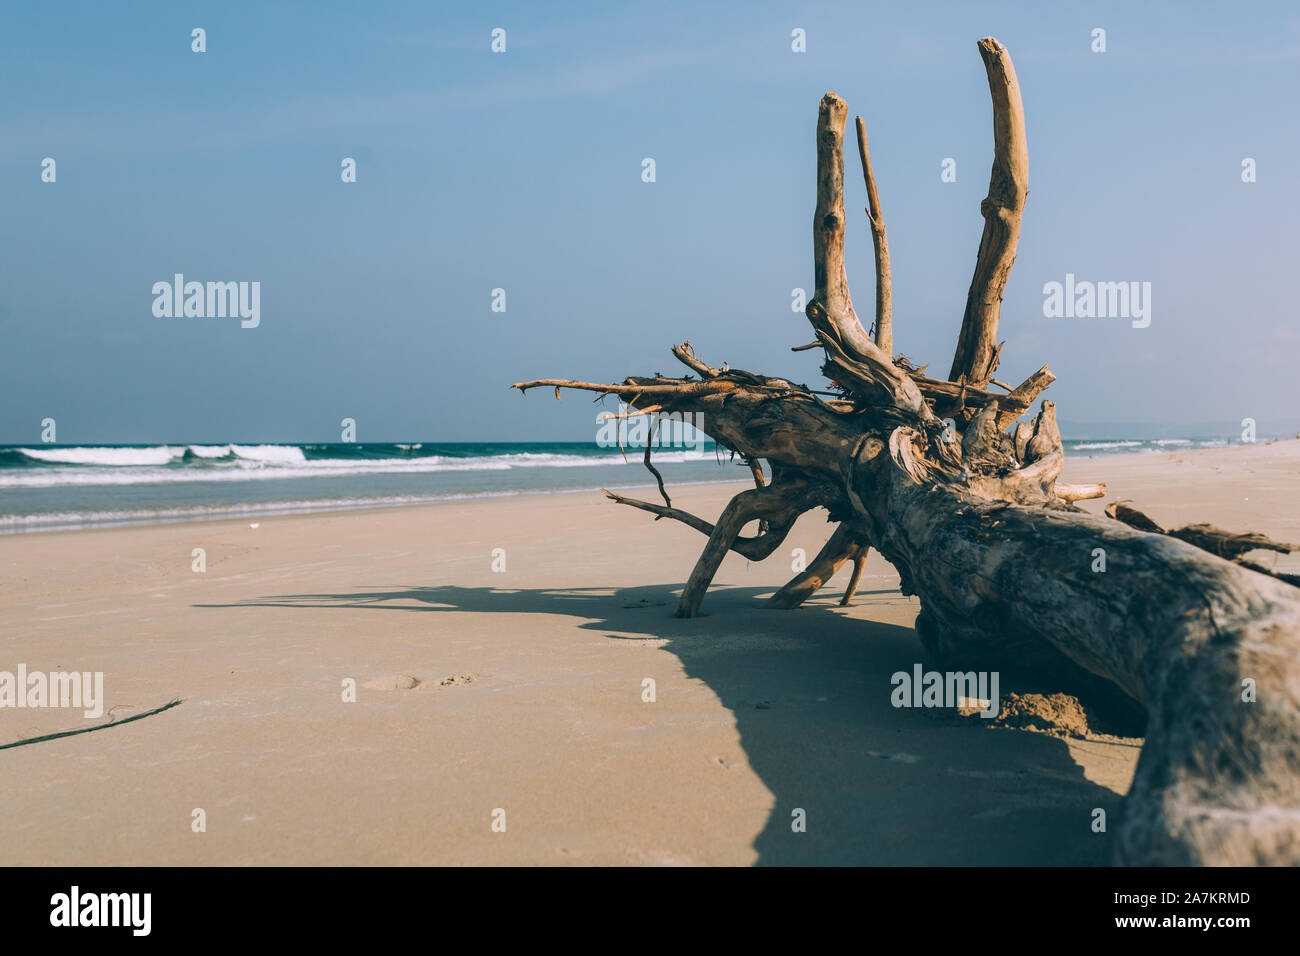 Albero secco, la radice si trova sulla riva di una spiaggia sabbiosa spiaggia vuota, spiaggia vuota, piccole onde, cielo blu, sfondo Foto Stock